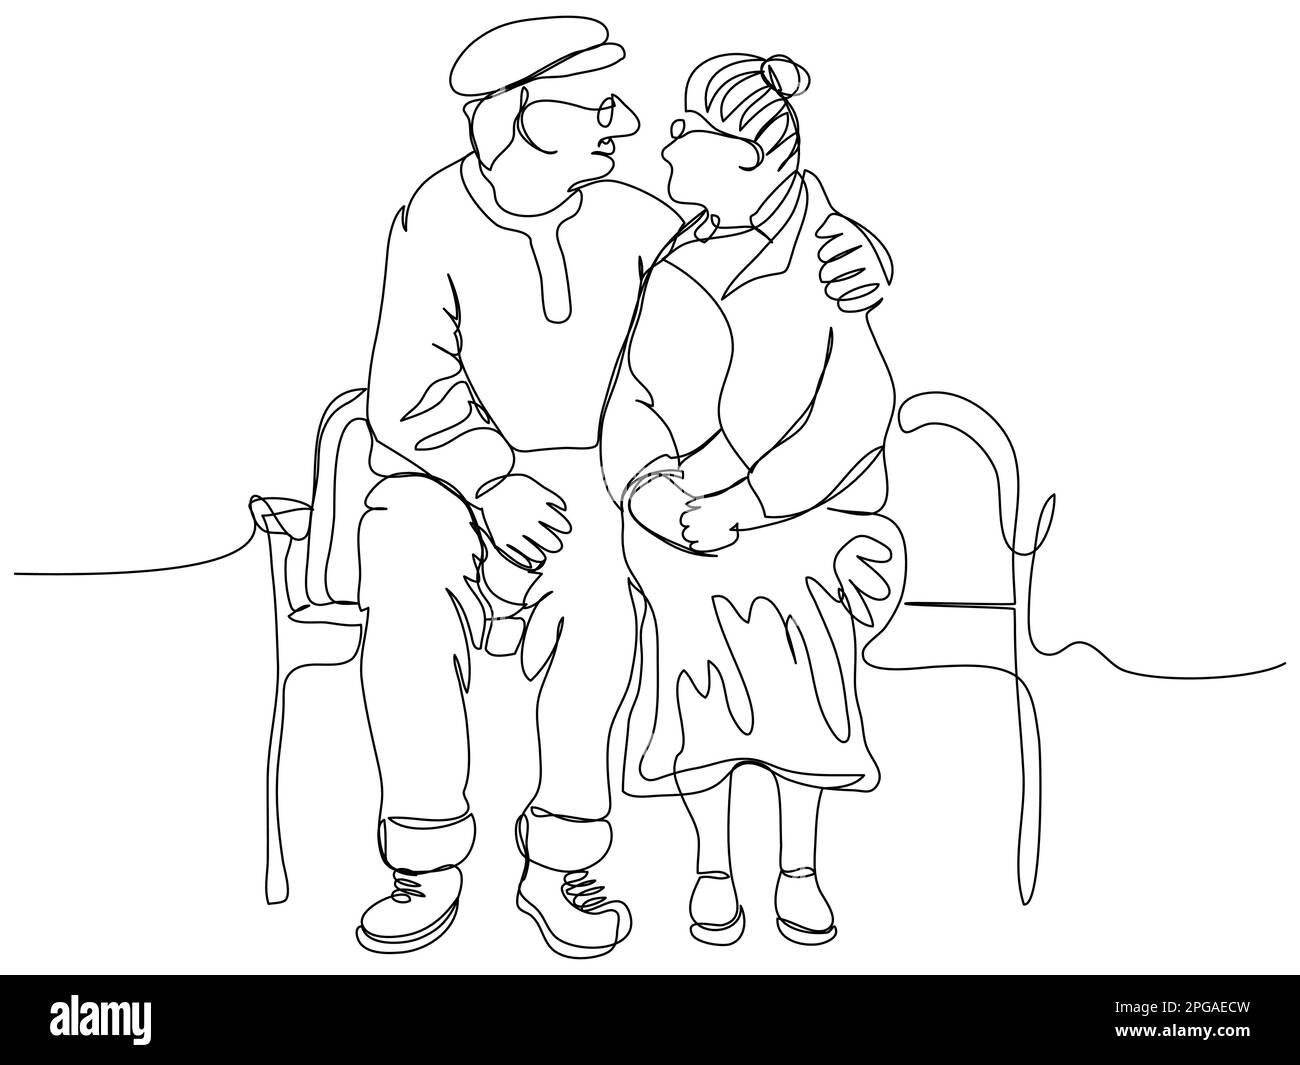 Ein älteres Paar sitzt auf einer Bank und umarmt sich in einer Reihe auf weißem Hintergrund. Das Konzept der glücklichen Liebe durch die Jahre in einem minimalistischen Stall Stock Vektor